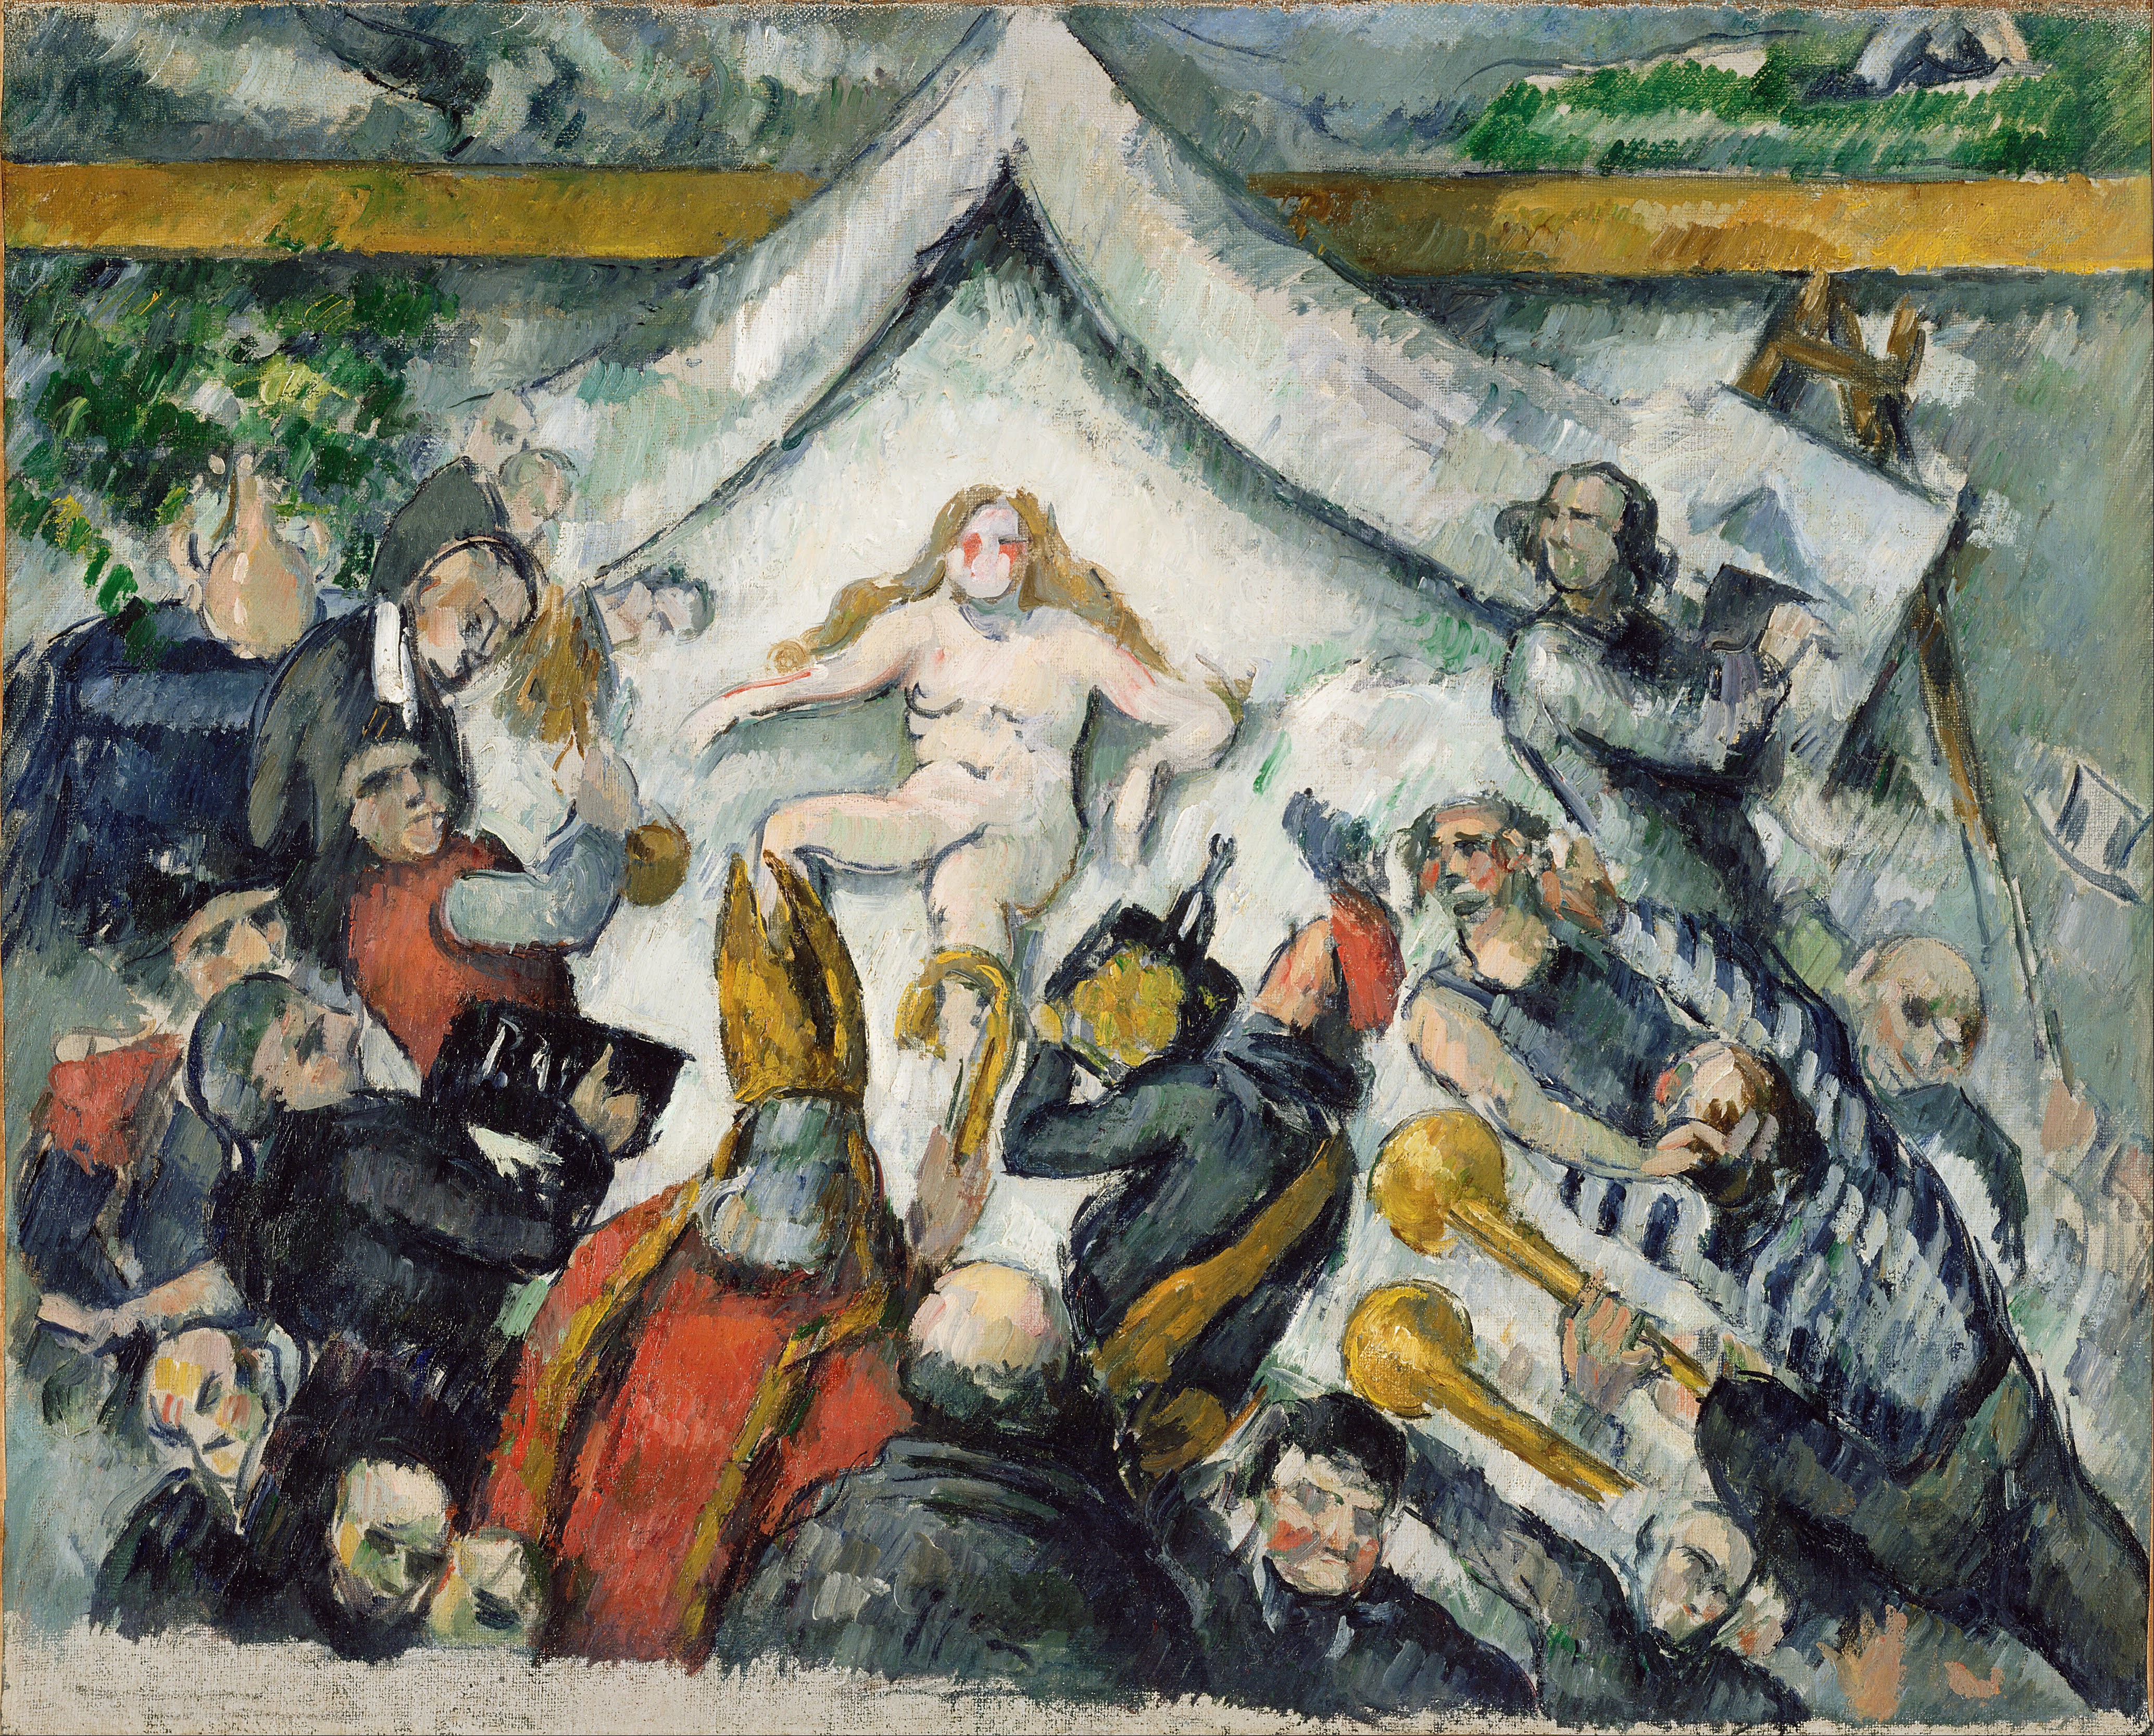 永恆的女性 by Paul Cézanne - 1877 - 53 x 43.2厘米 